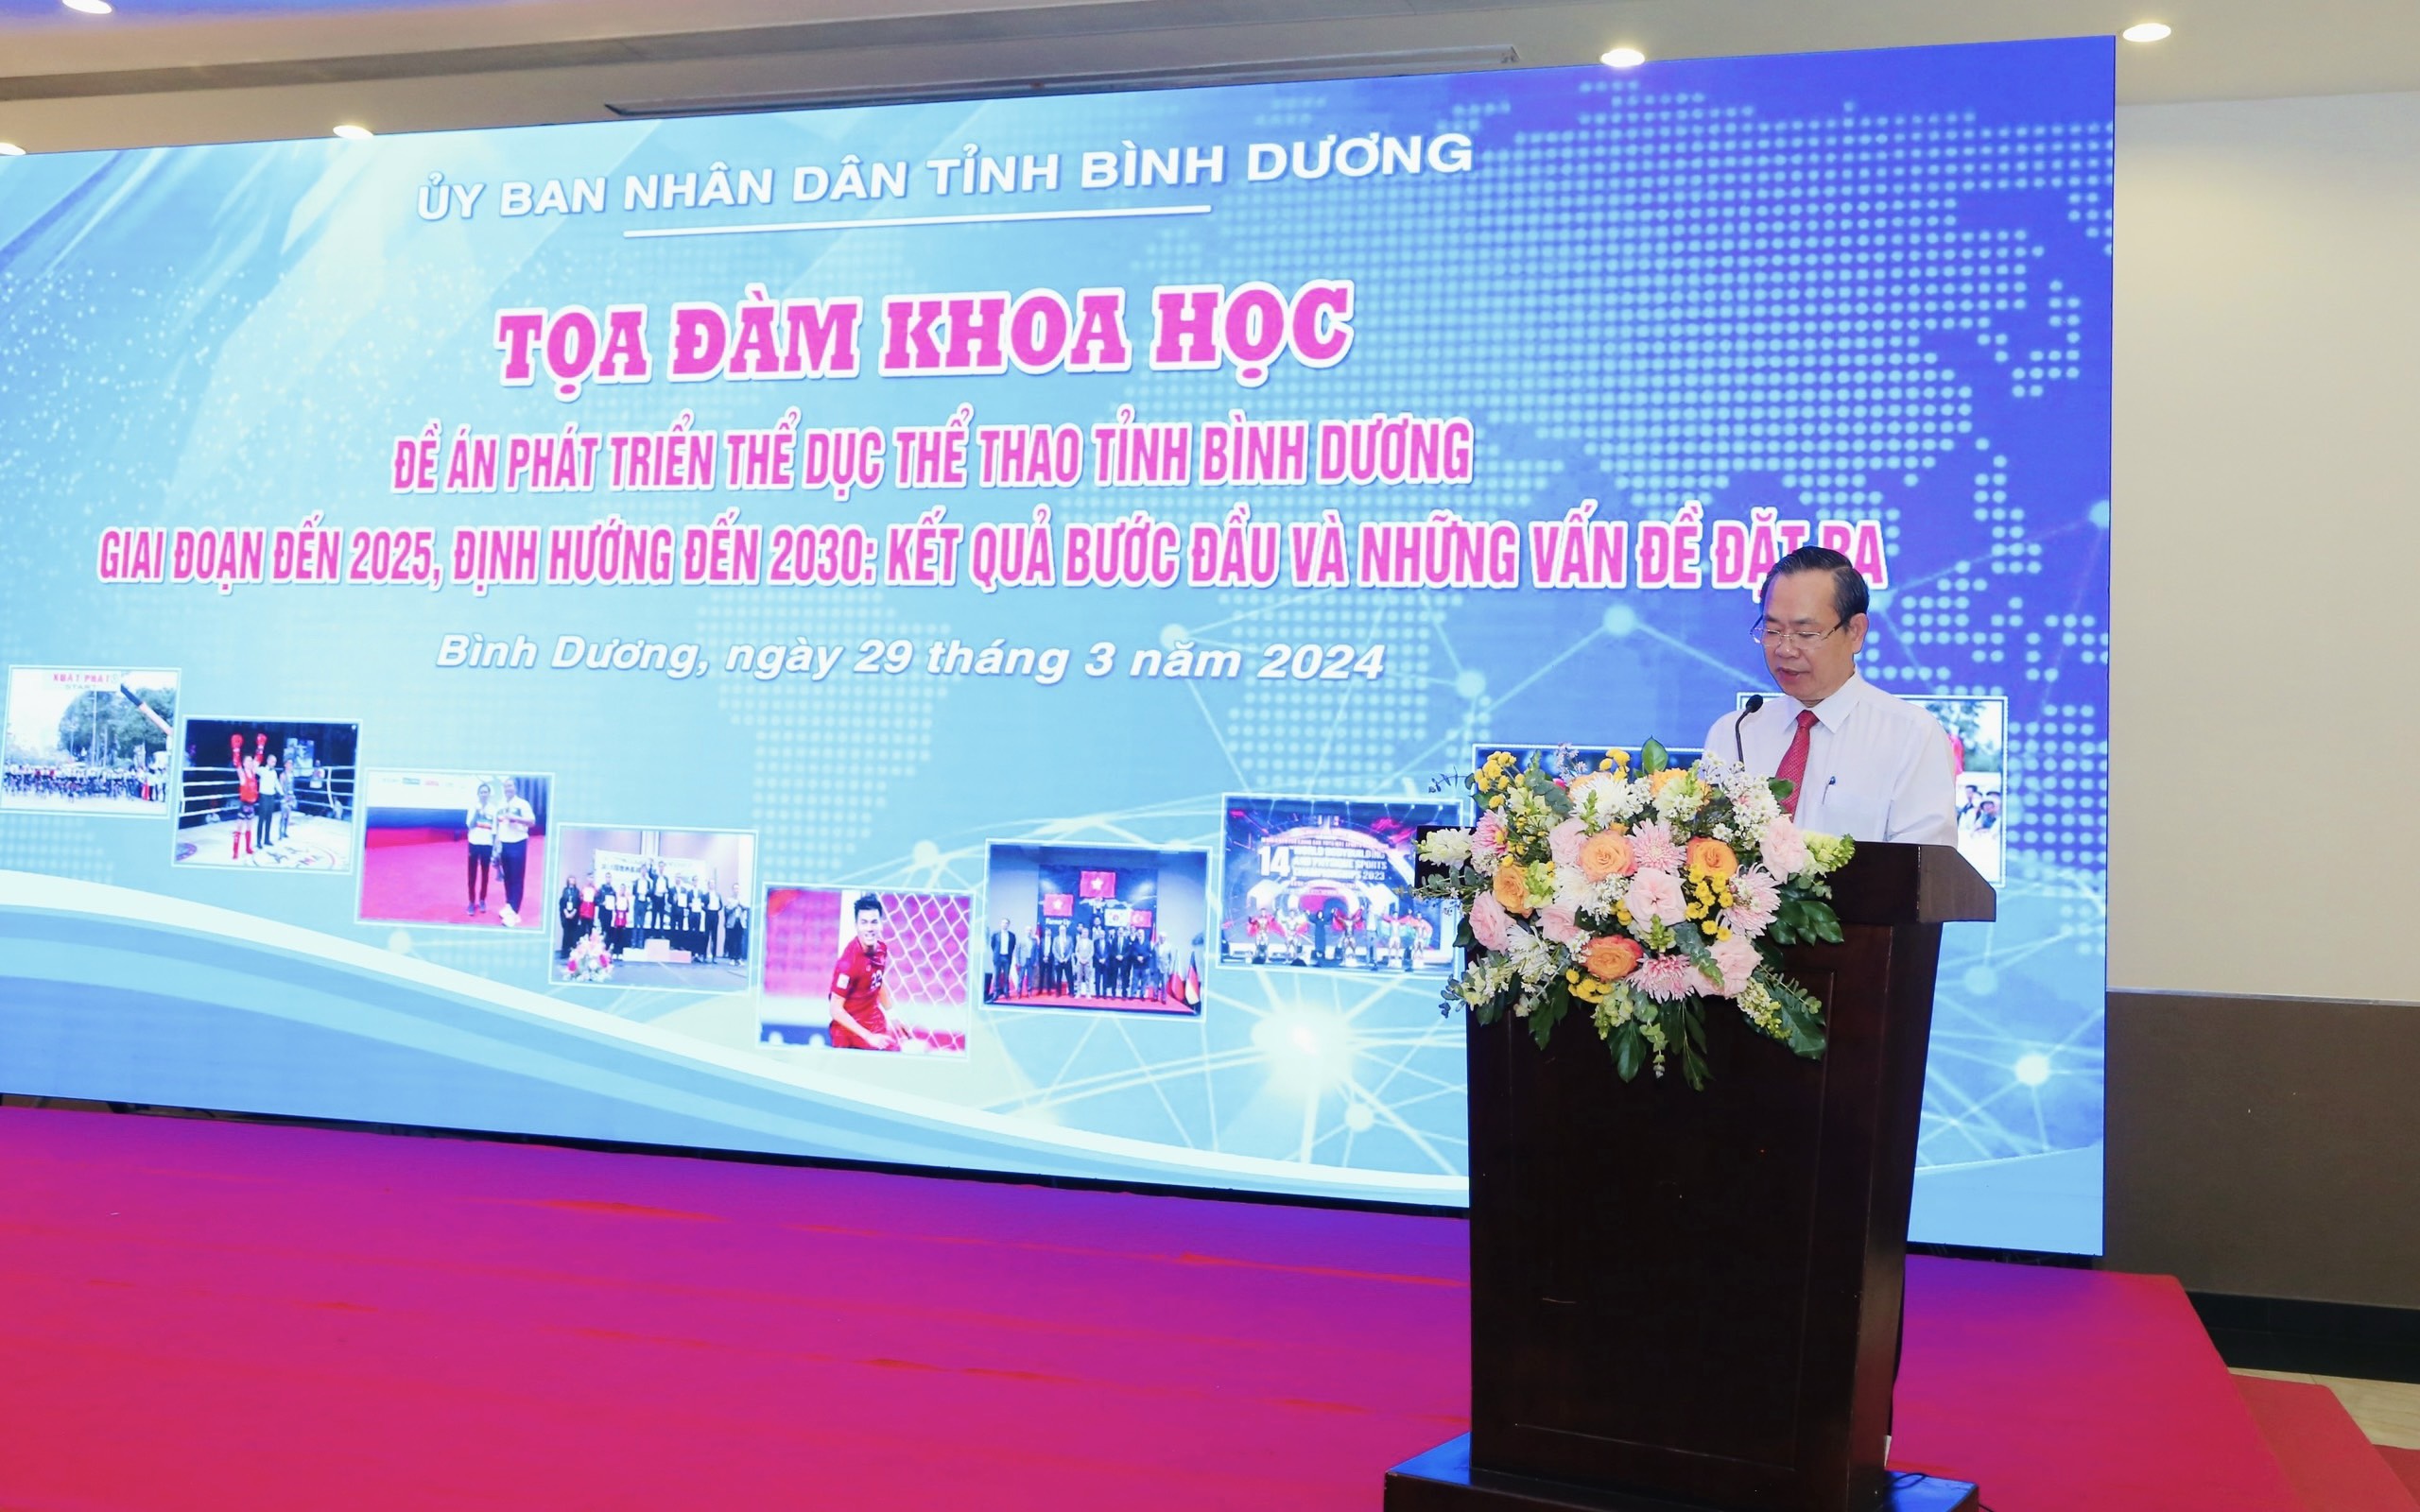 Ông Nguyễn Văn Dành – PCT UBND tỉnh Bình Dương phát biểu tại toạ đàm